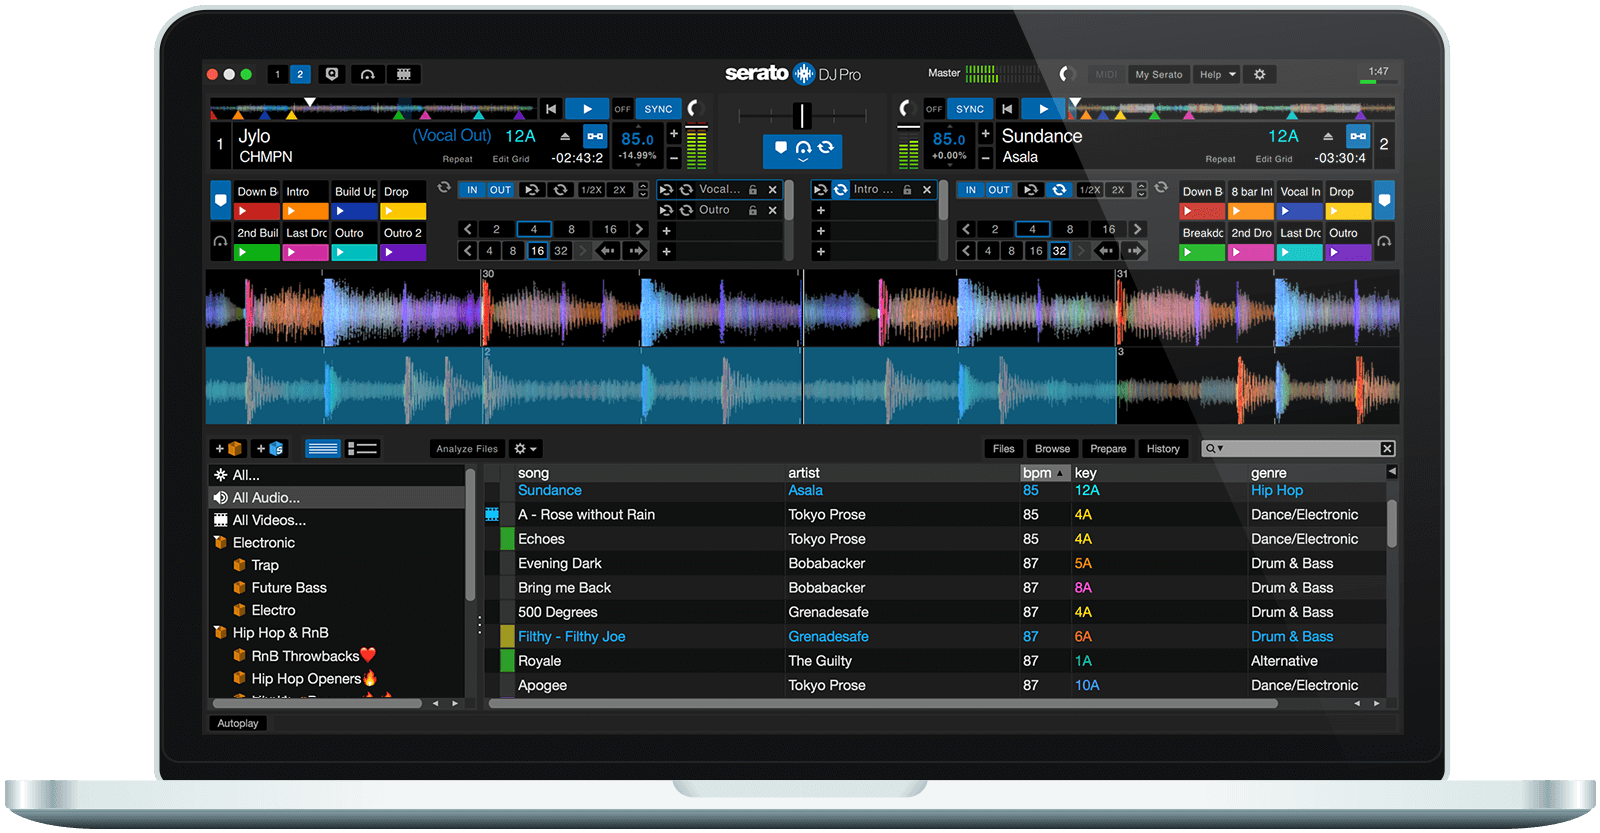 download Serato DJ Pro 3.0.7.504